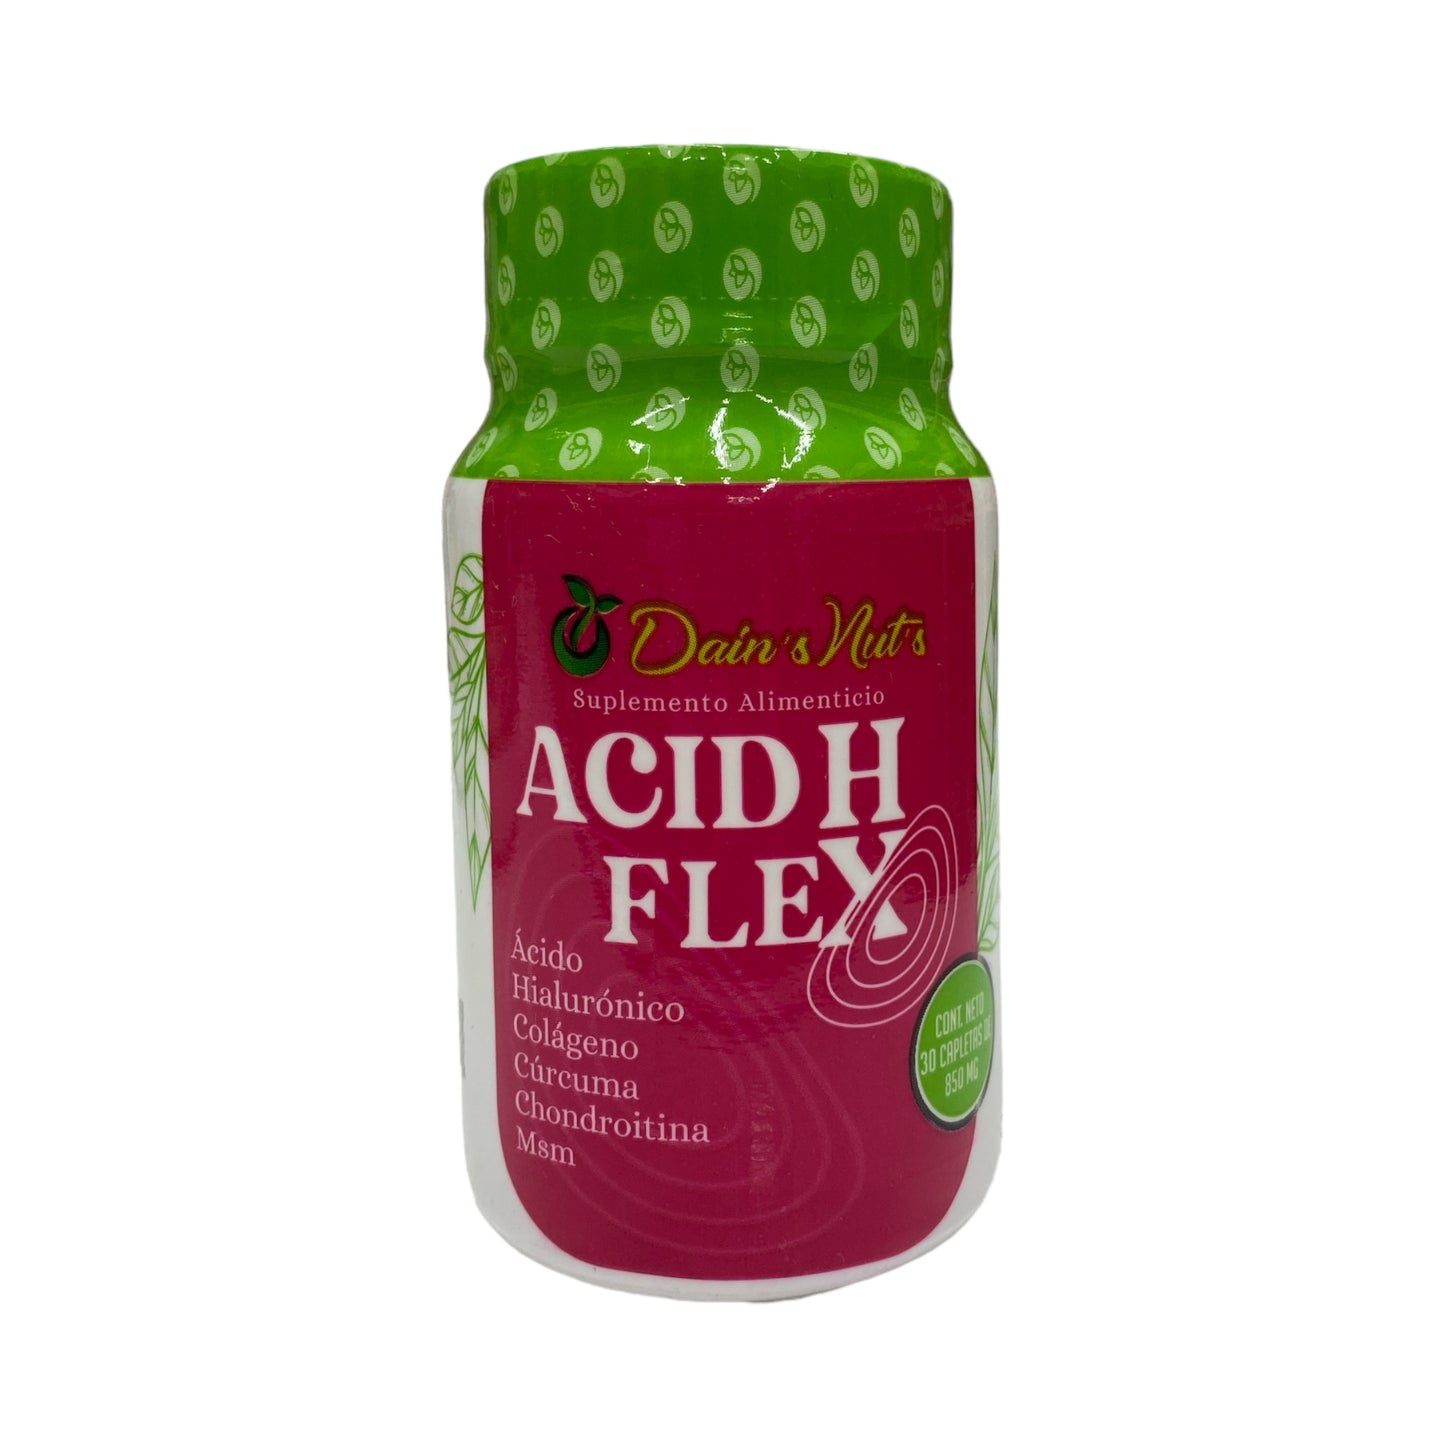 Acid H Flex 30 capletas Dain's Nuts